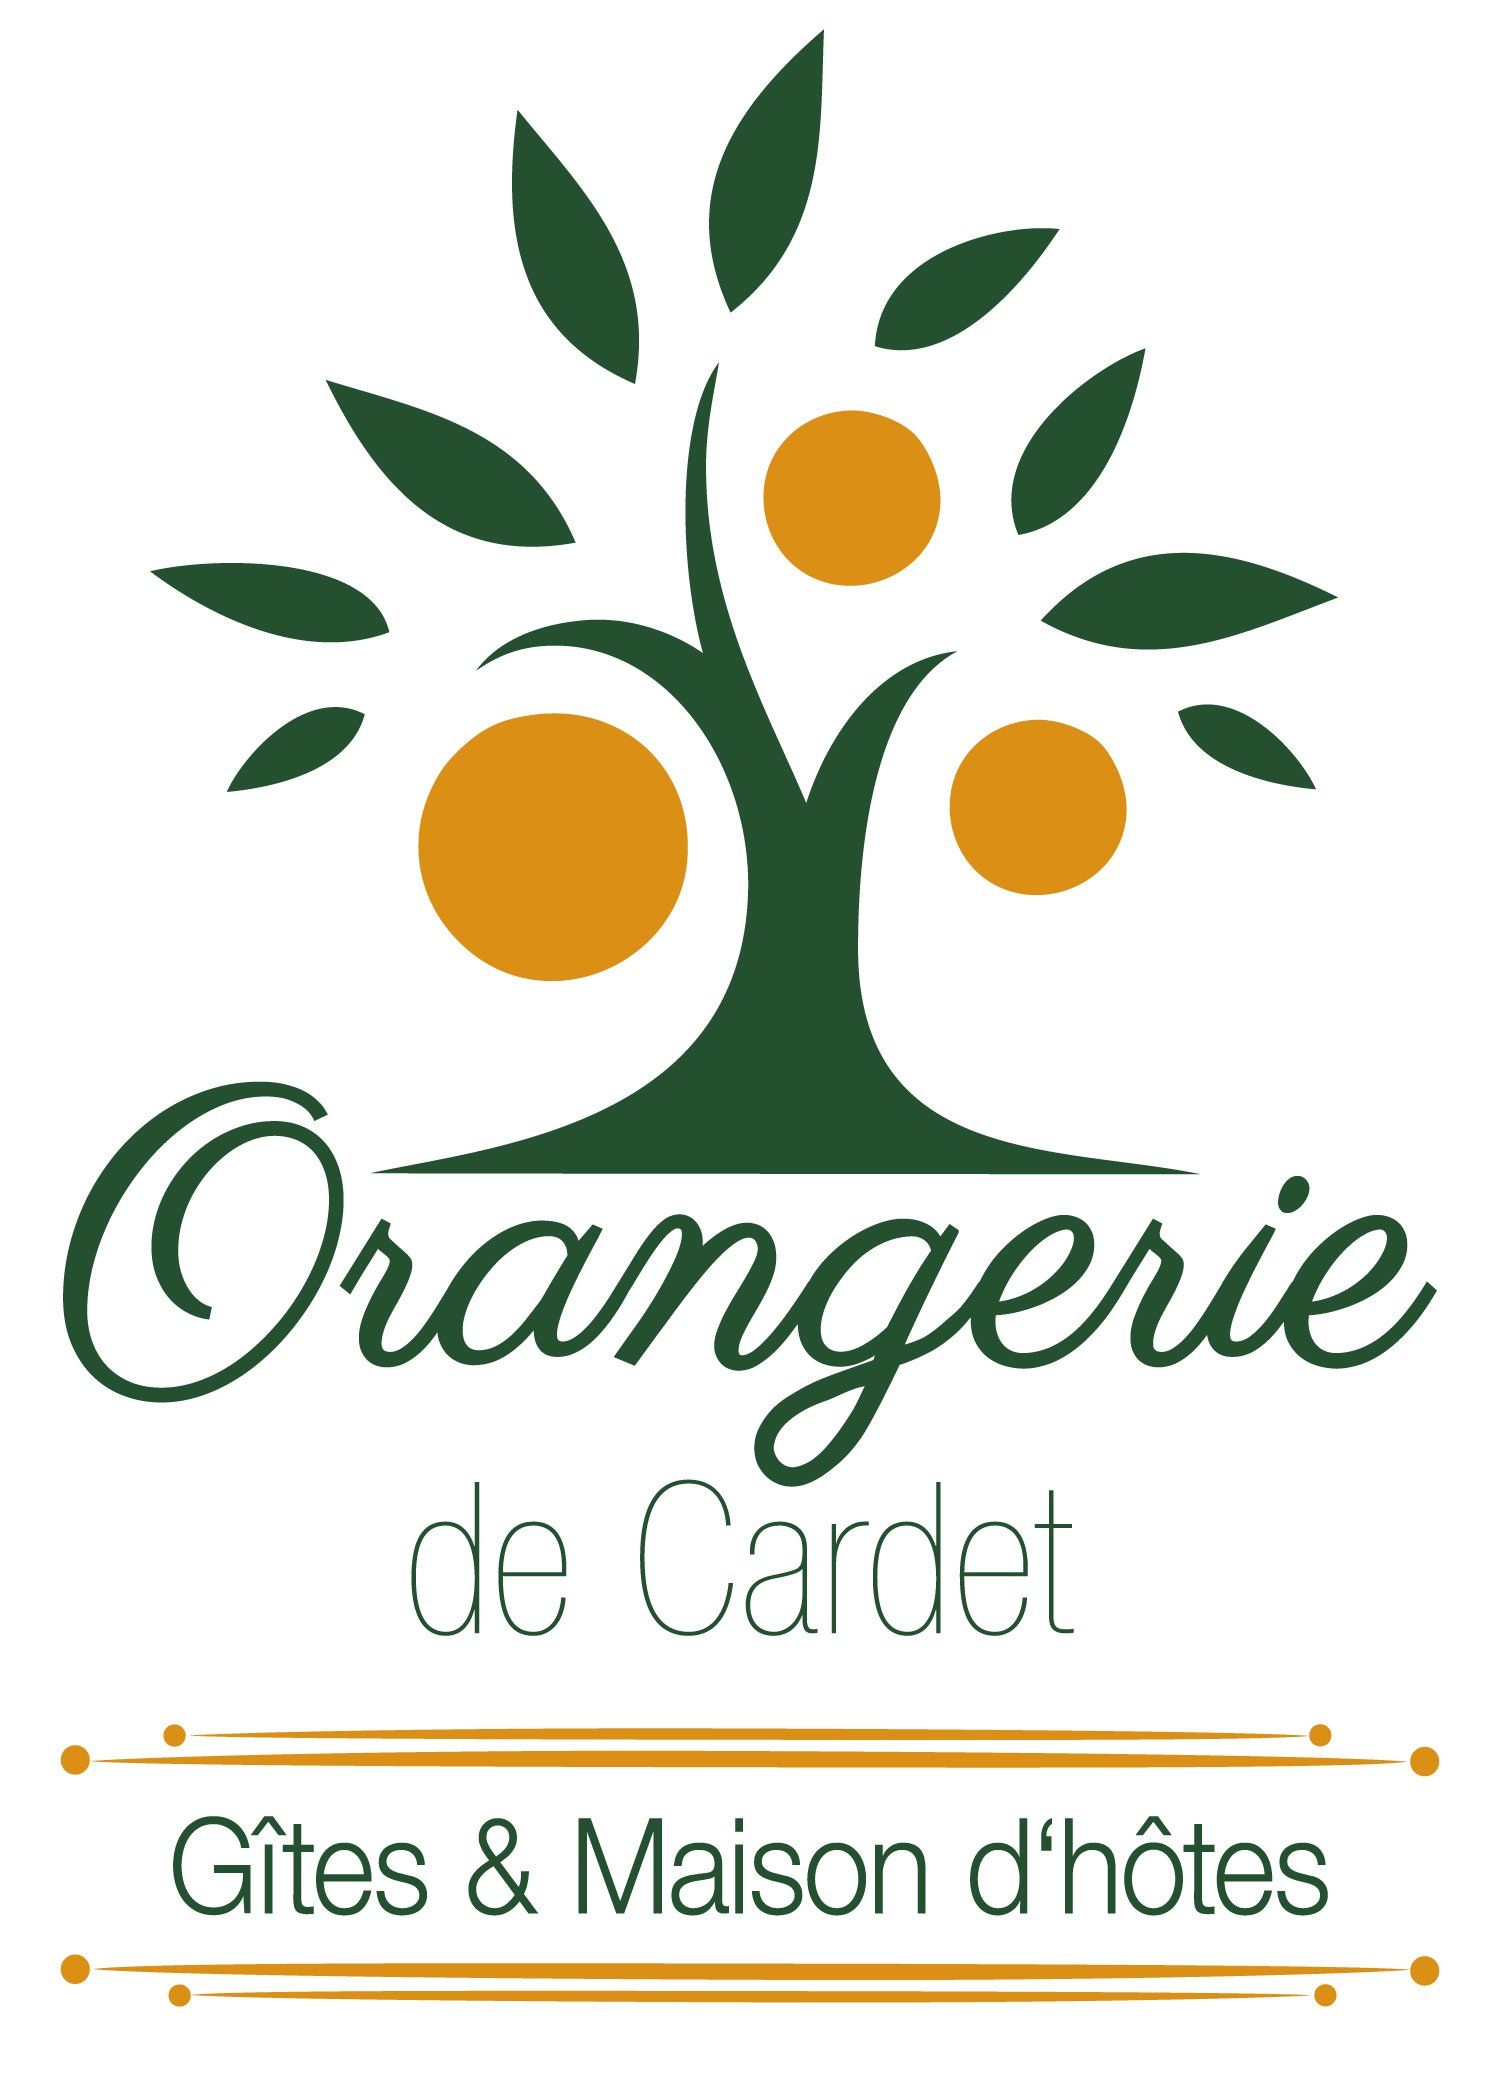 Orangerie de Cardet - Gites & Maison d'hotes